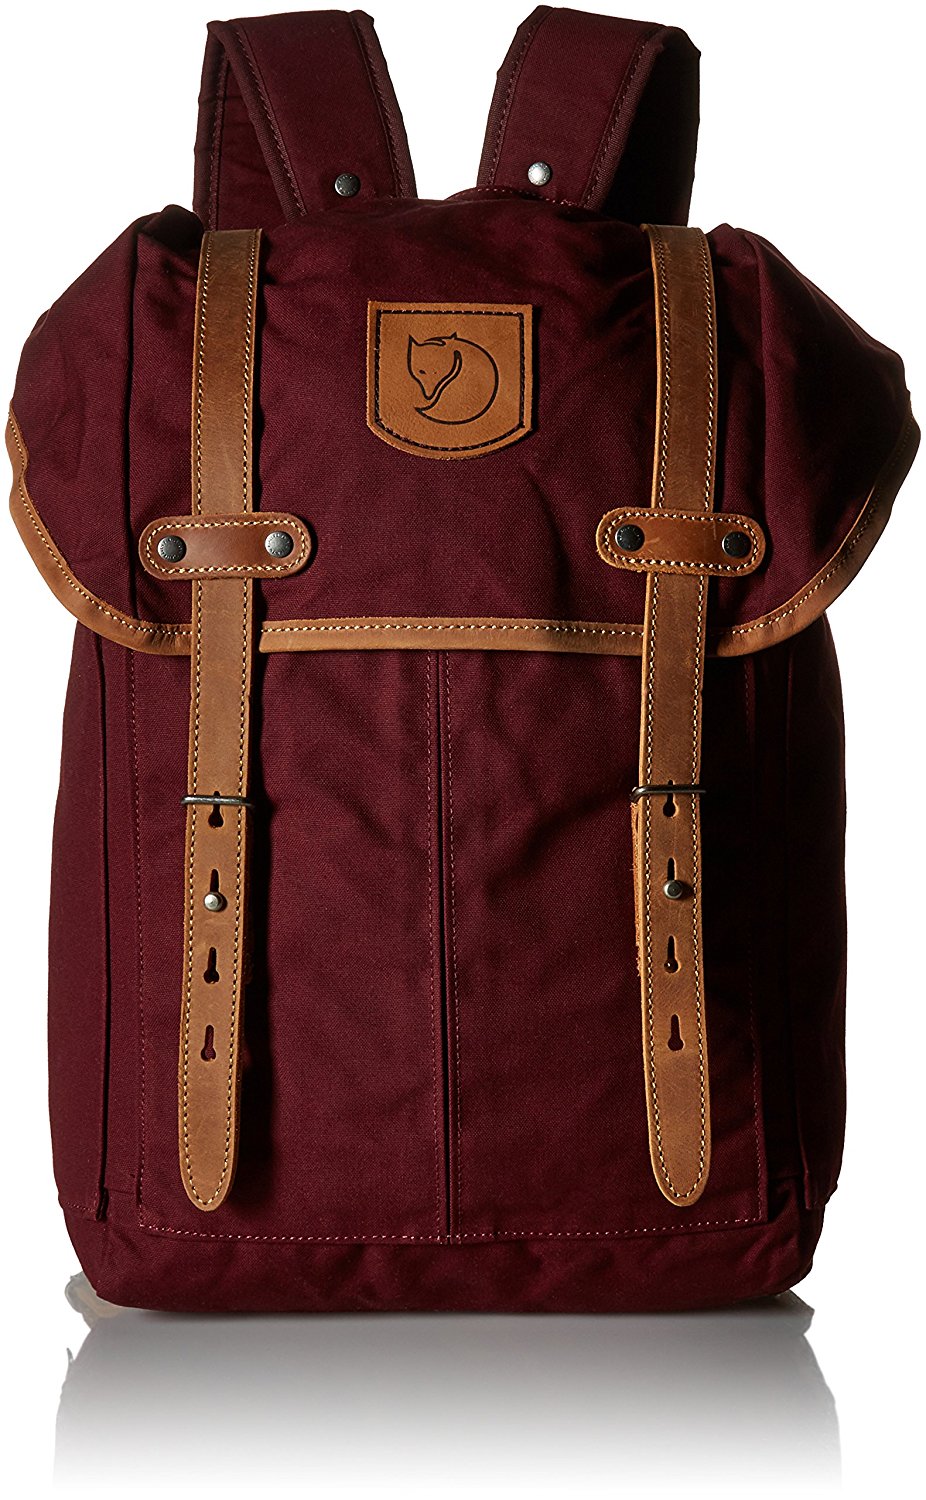 22 best stylish backpacks